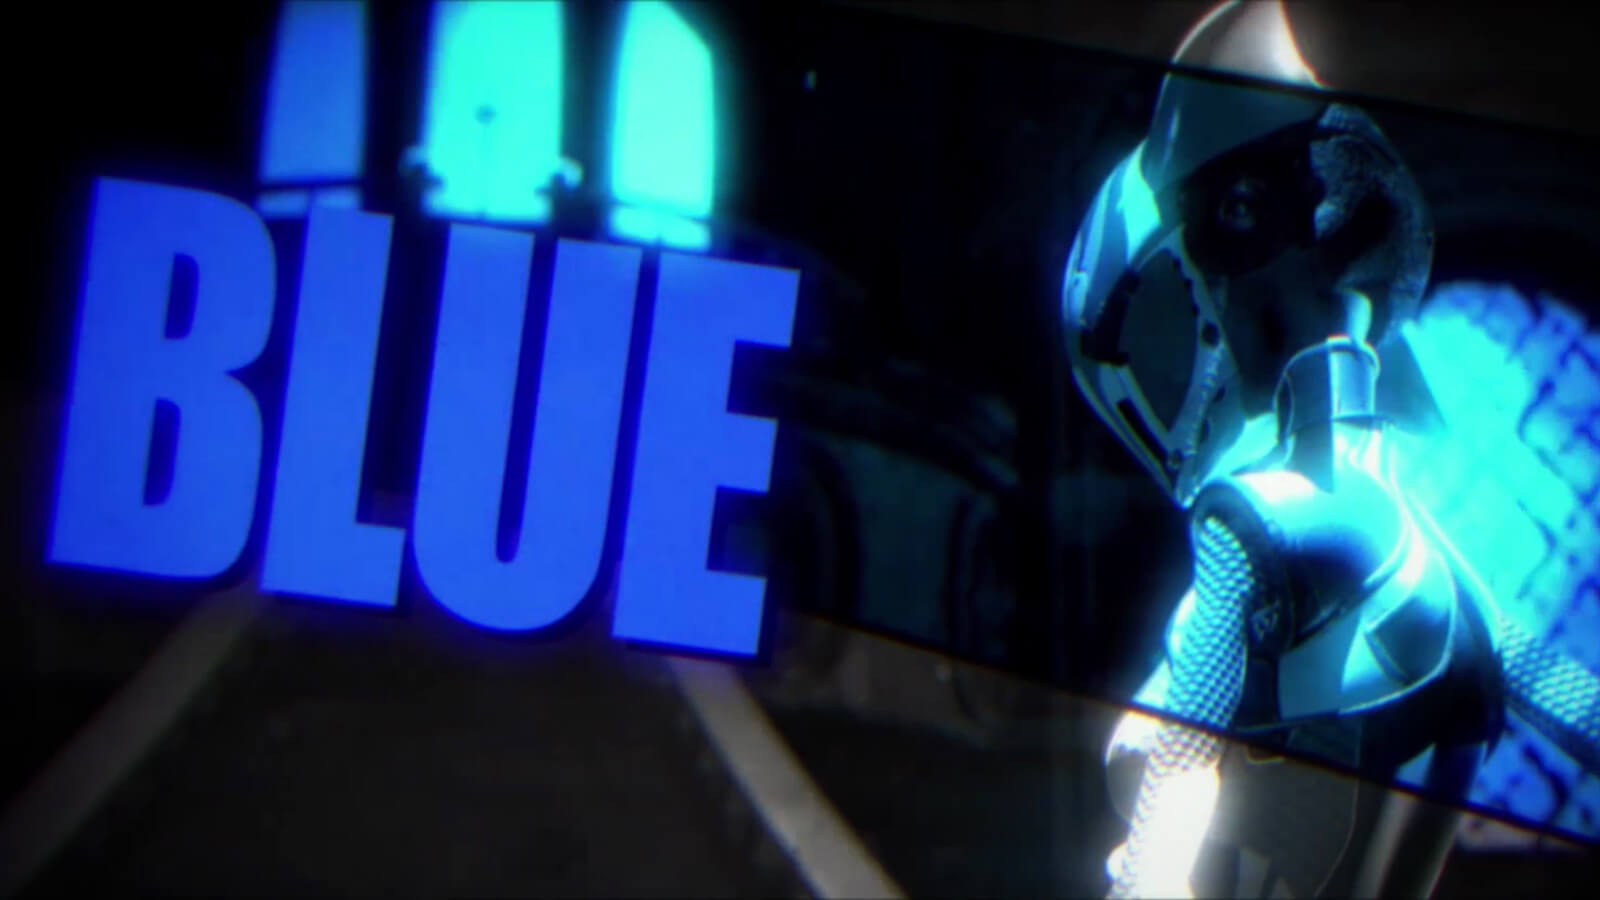 Figura delgada en un traje y casco futuristas flexibles a la derecha de la palabra AZUL en letras azules grandes.